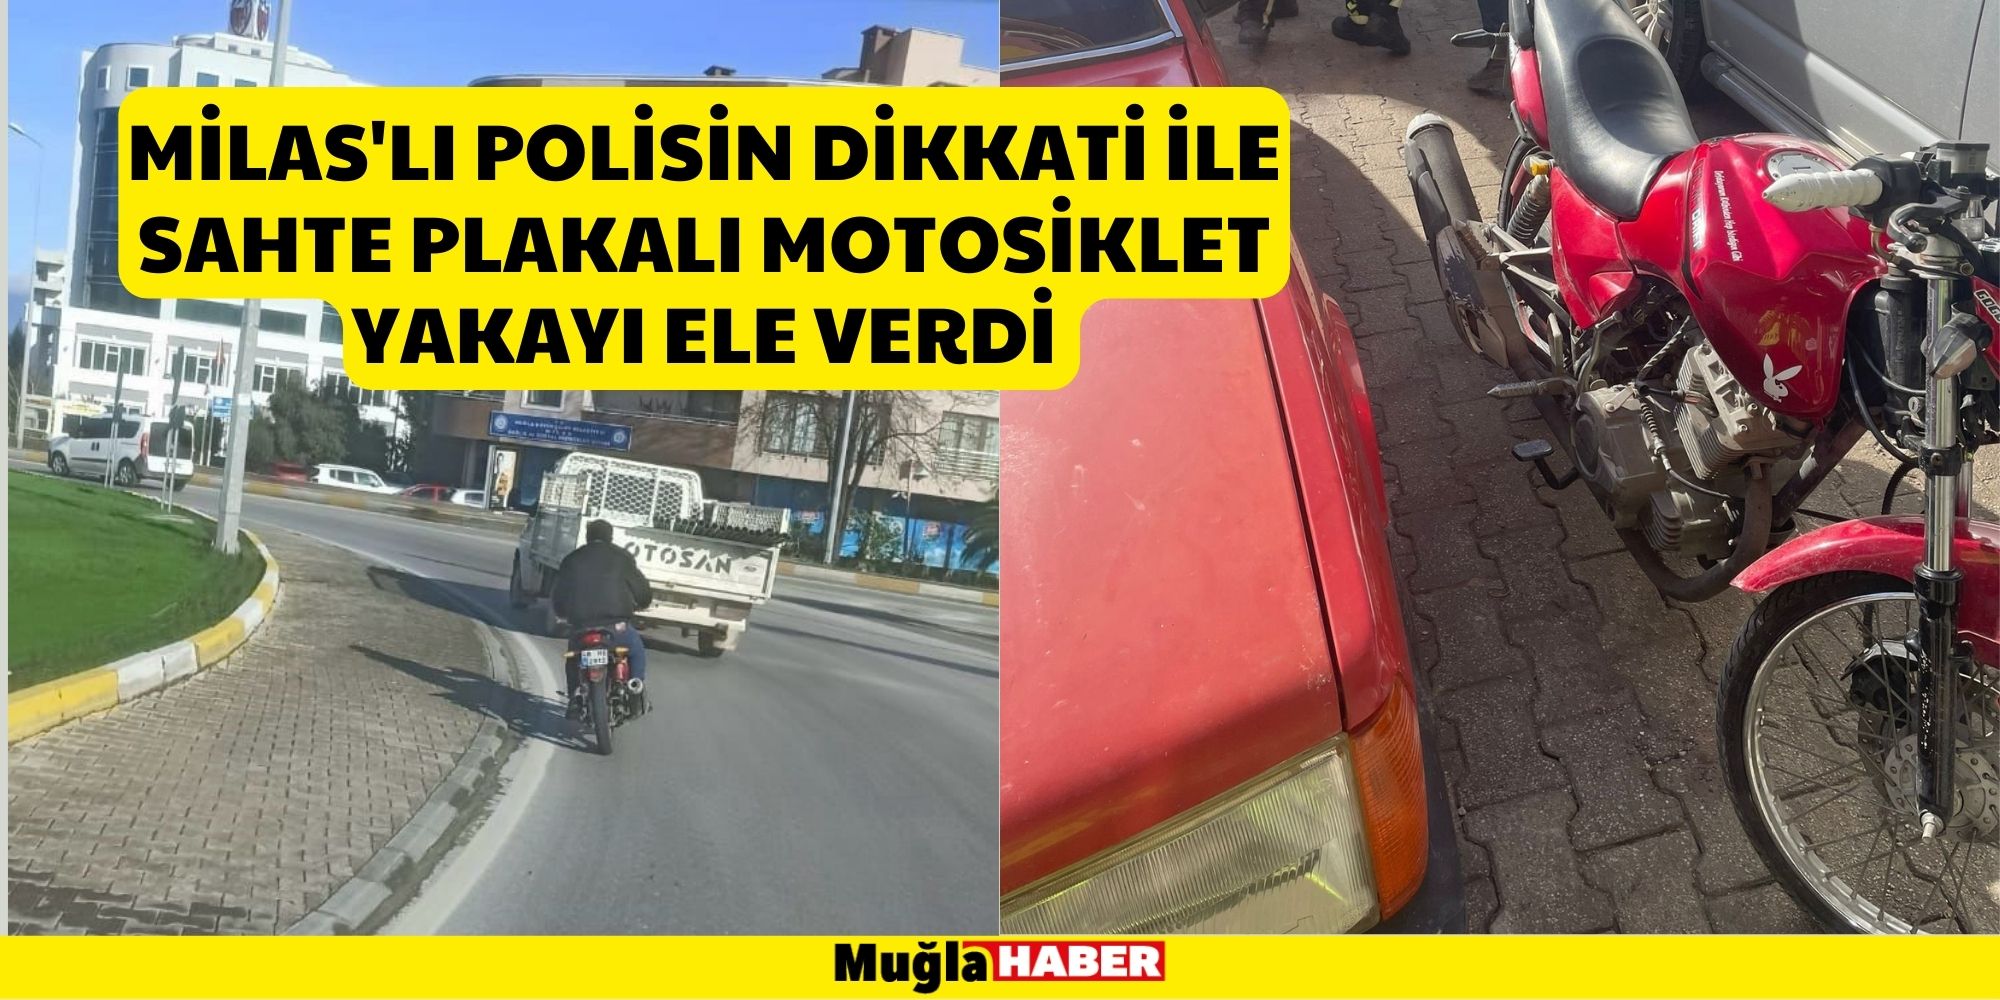 Milas'lı Polisin Dikkati ile Sahte Plakalı Motosiklet Yakayı Ele Verdi